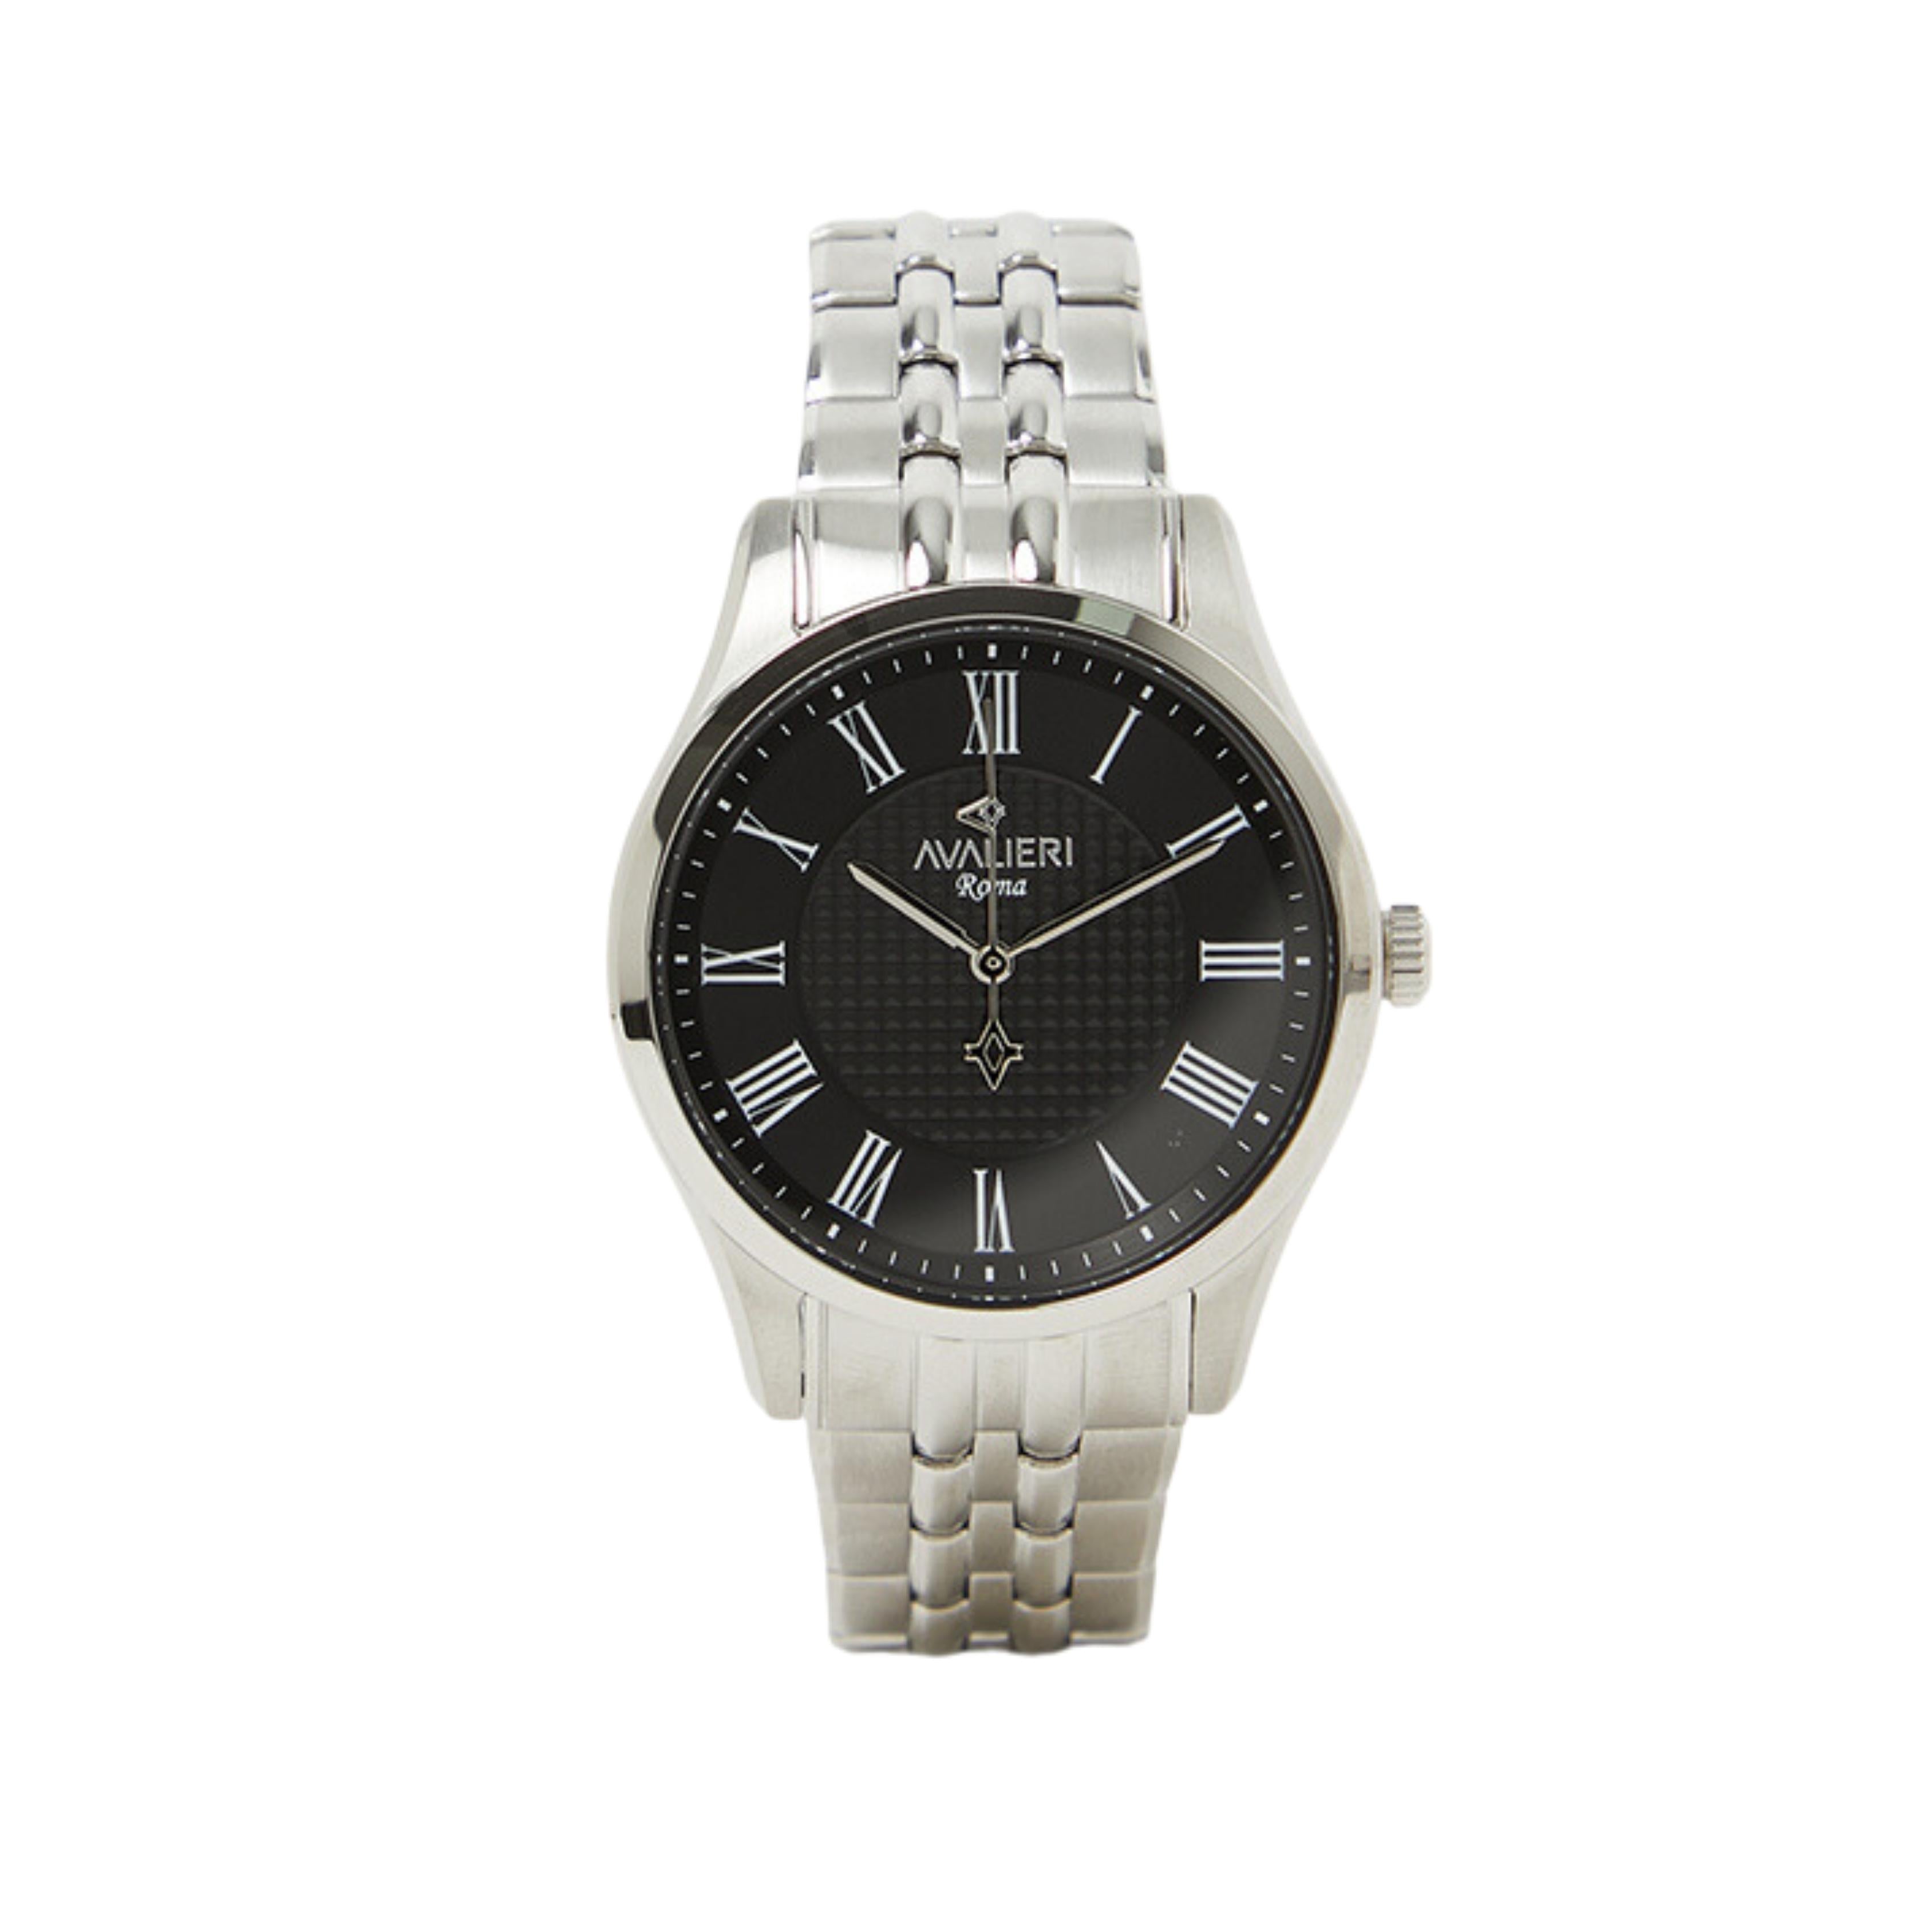 Avalieri Men's Quartz Black Dial Watch - AV-2614B